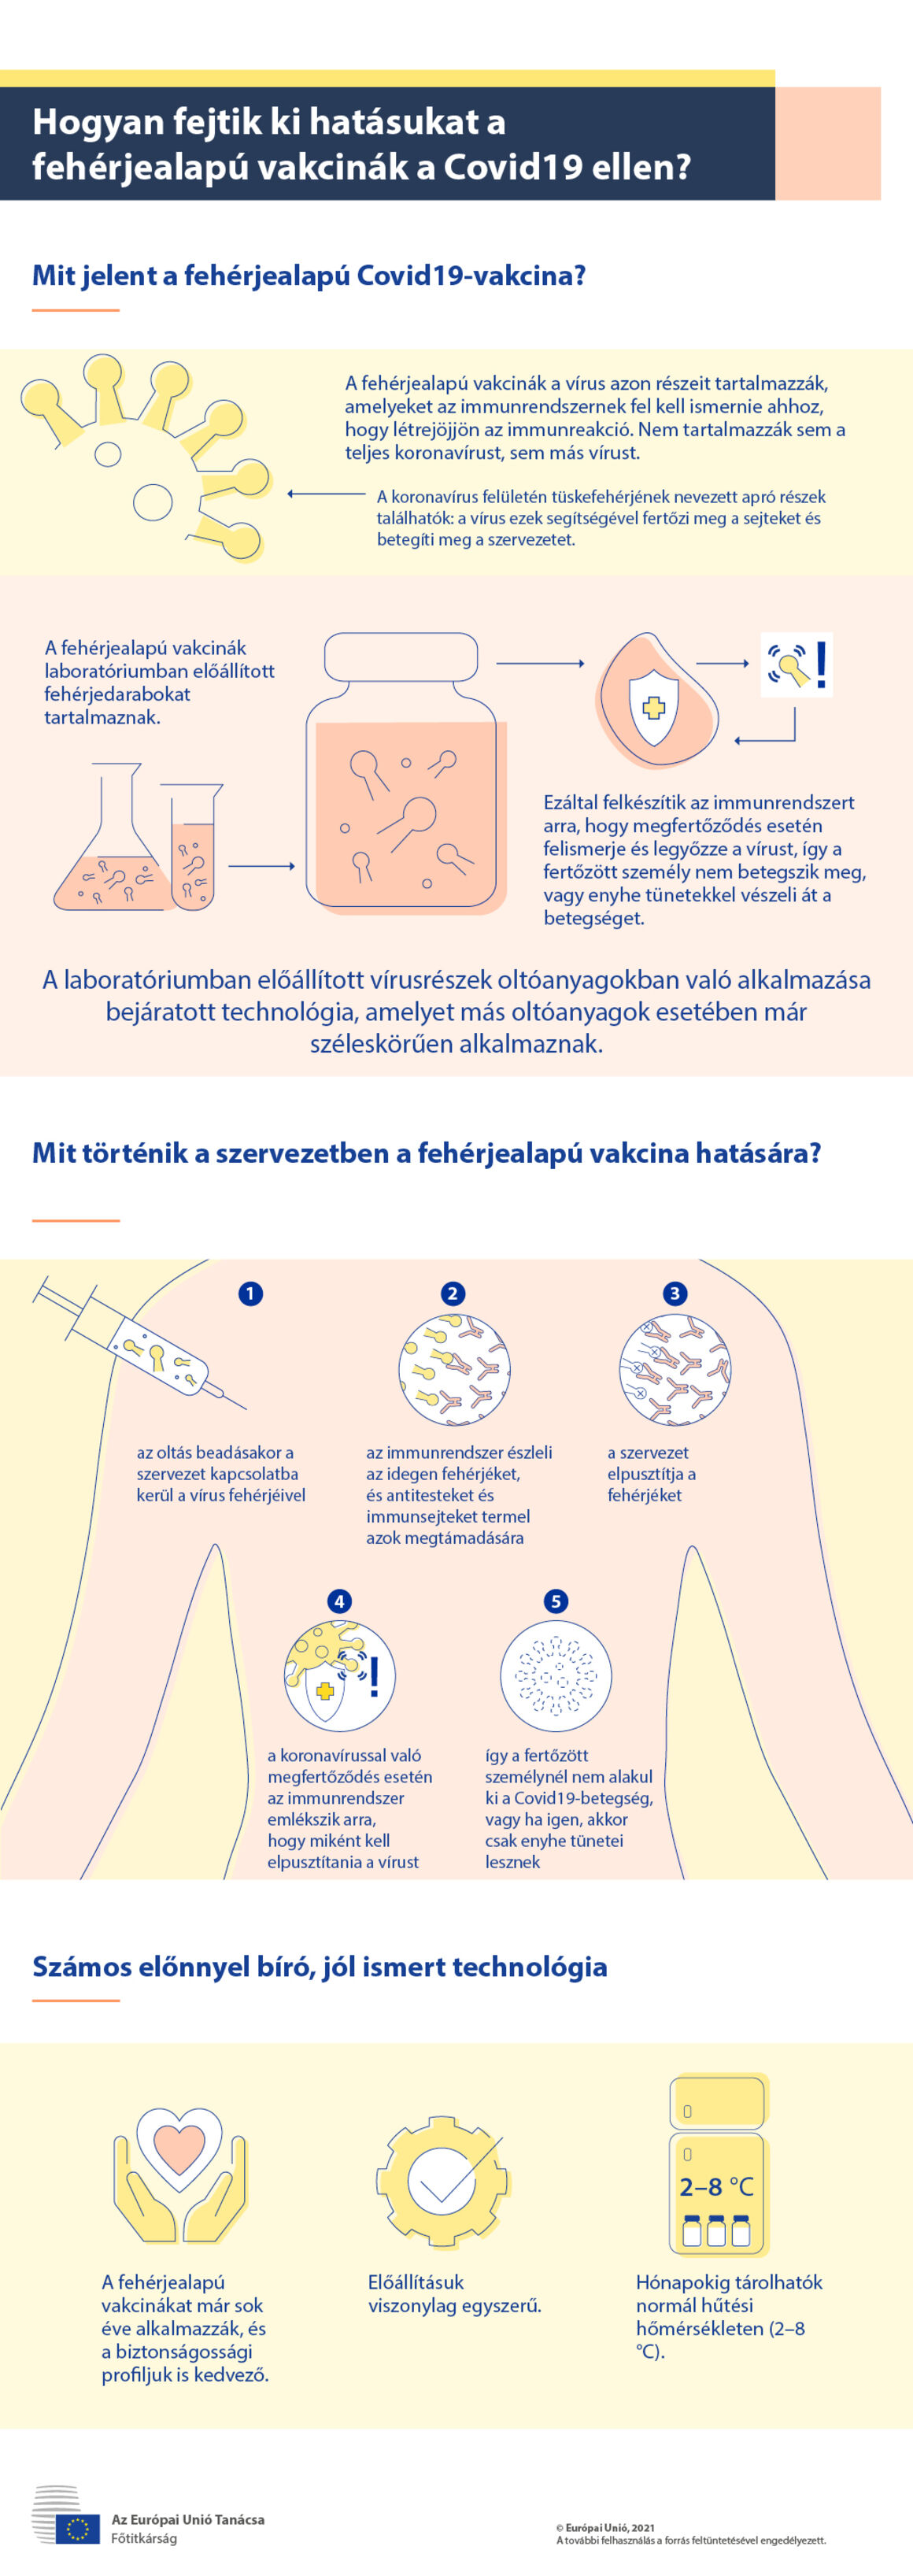 Infografika – Hogyan fejtik ki hatásukat a fehérjealapú vakcinák a Covid19 ellen?